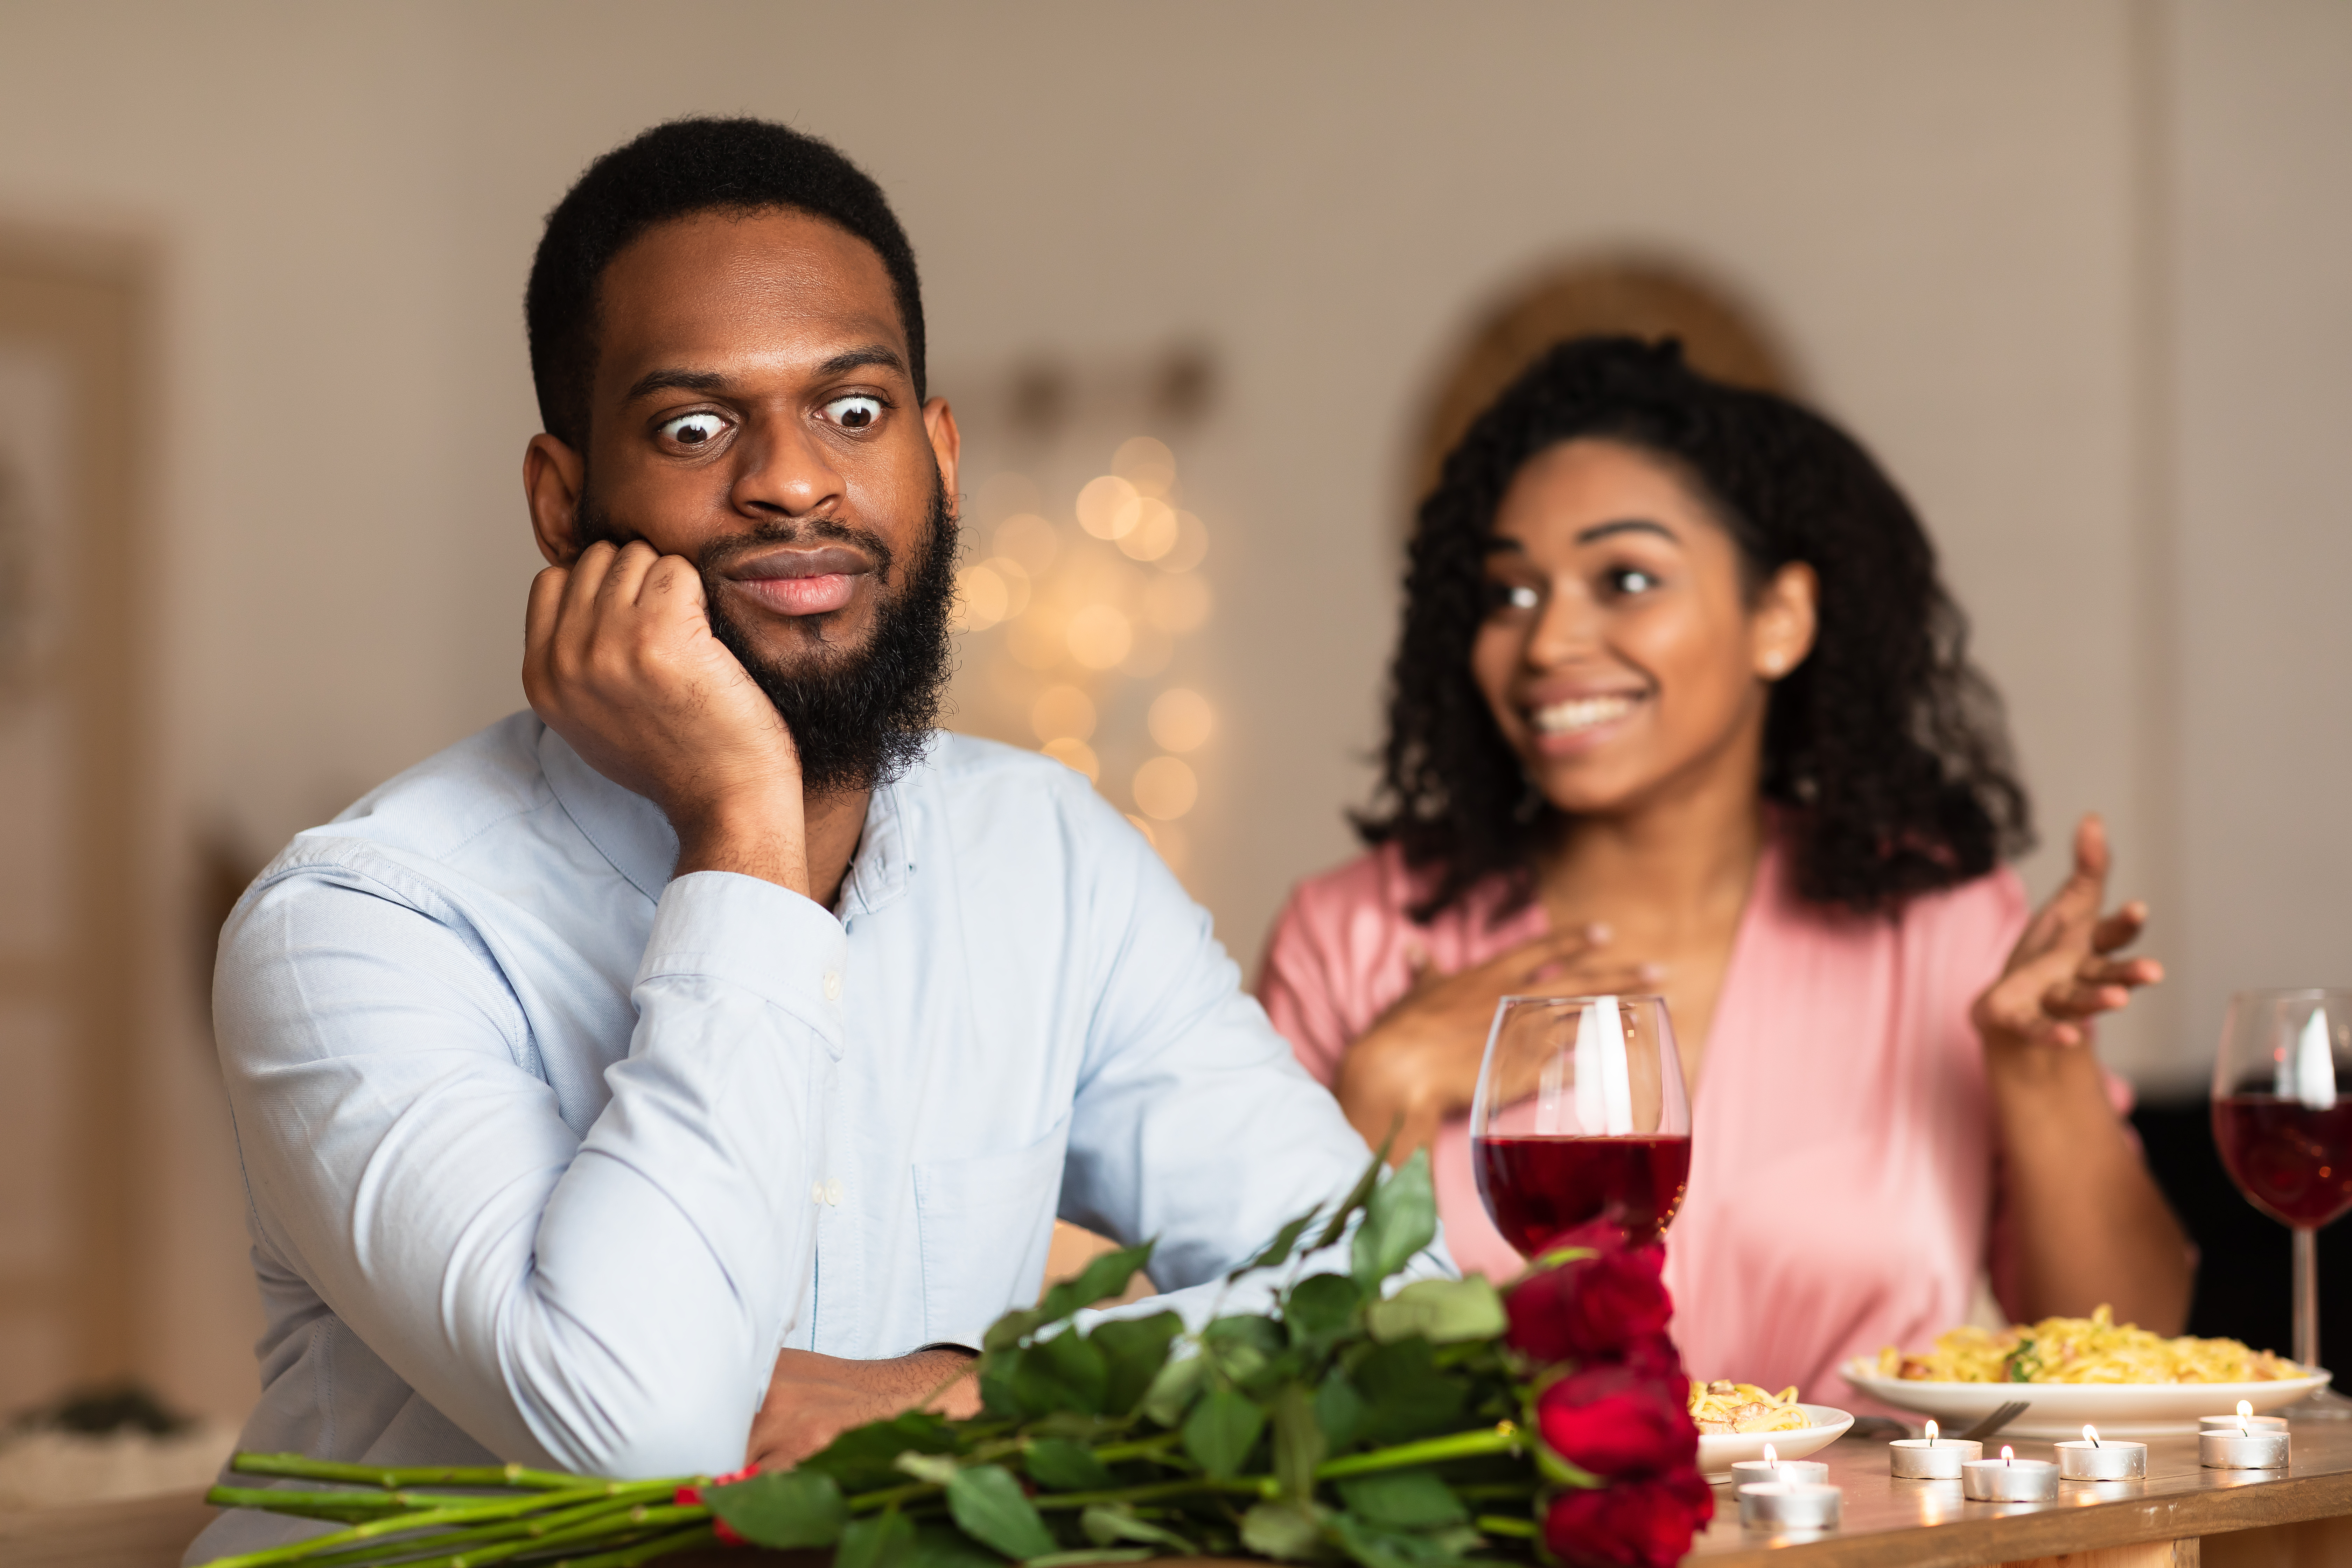 Homme noir insatisfait et choqué écoutant une femme excitée et émotive parler | Source : Shutterstock